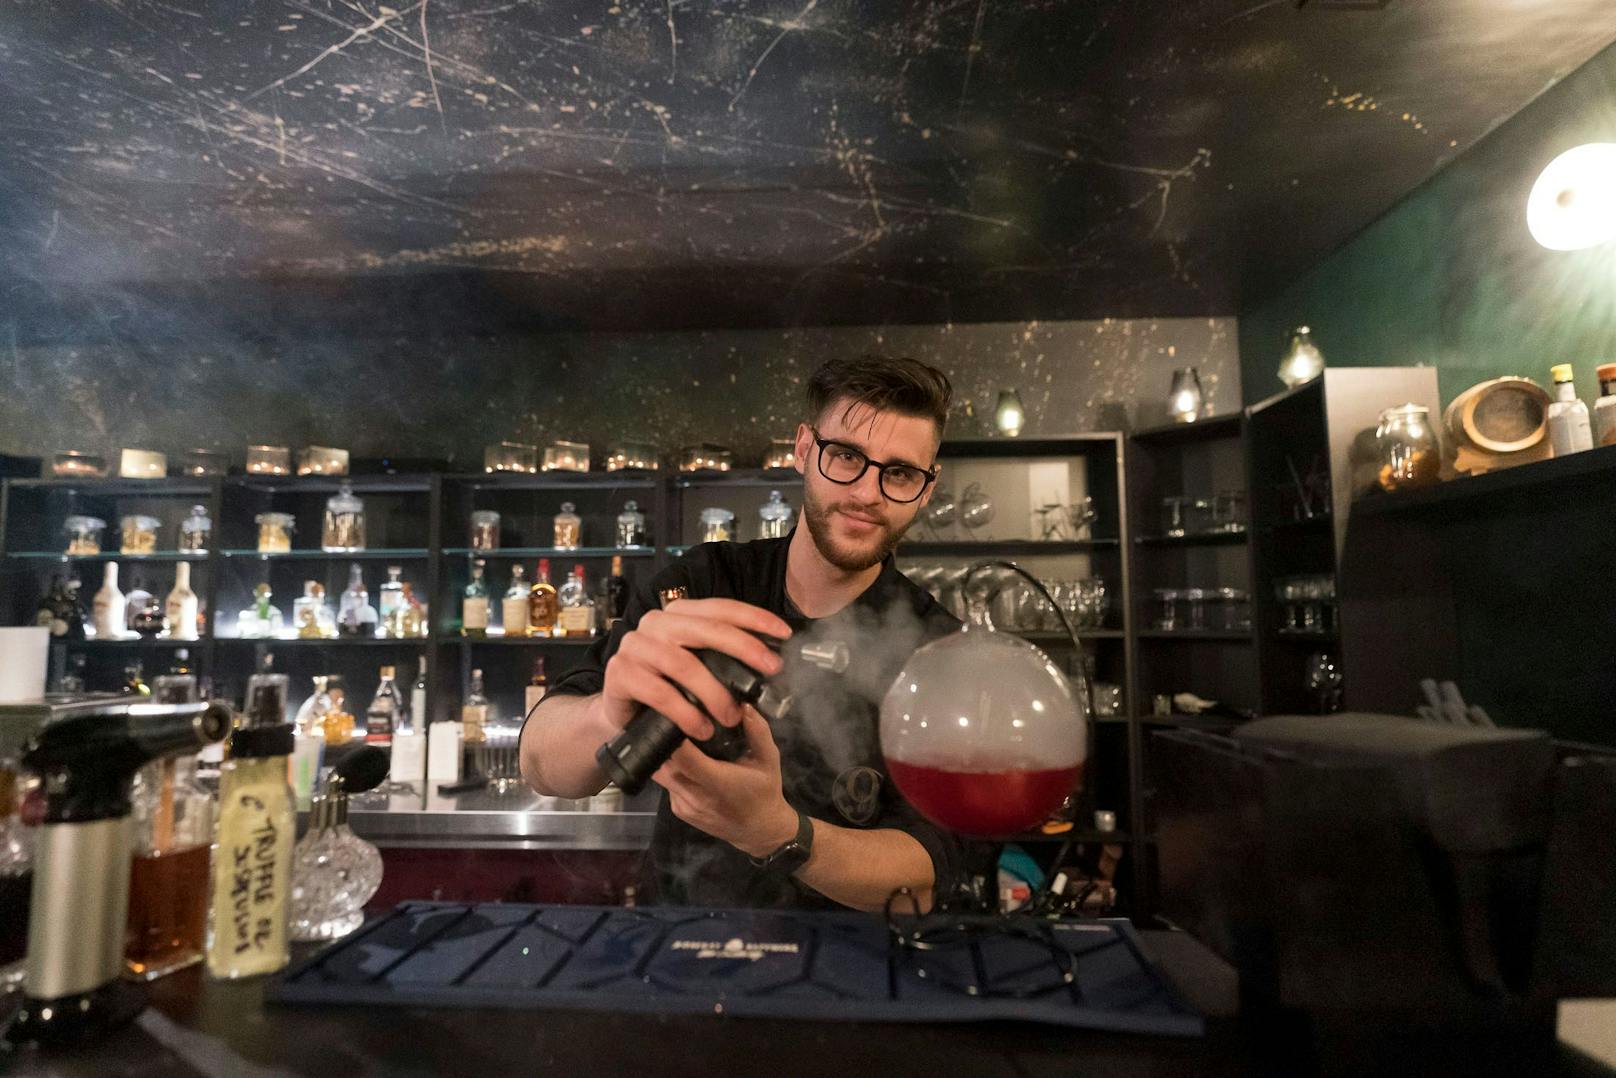 Magisch! Drinks à la Harry Potter in neuer Wiener Bar